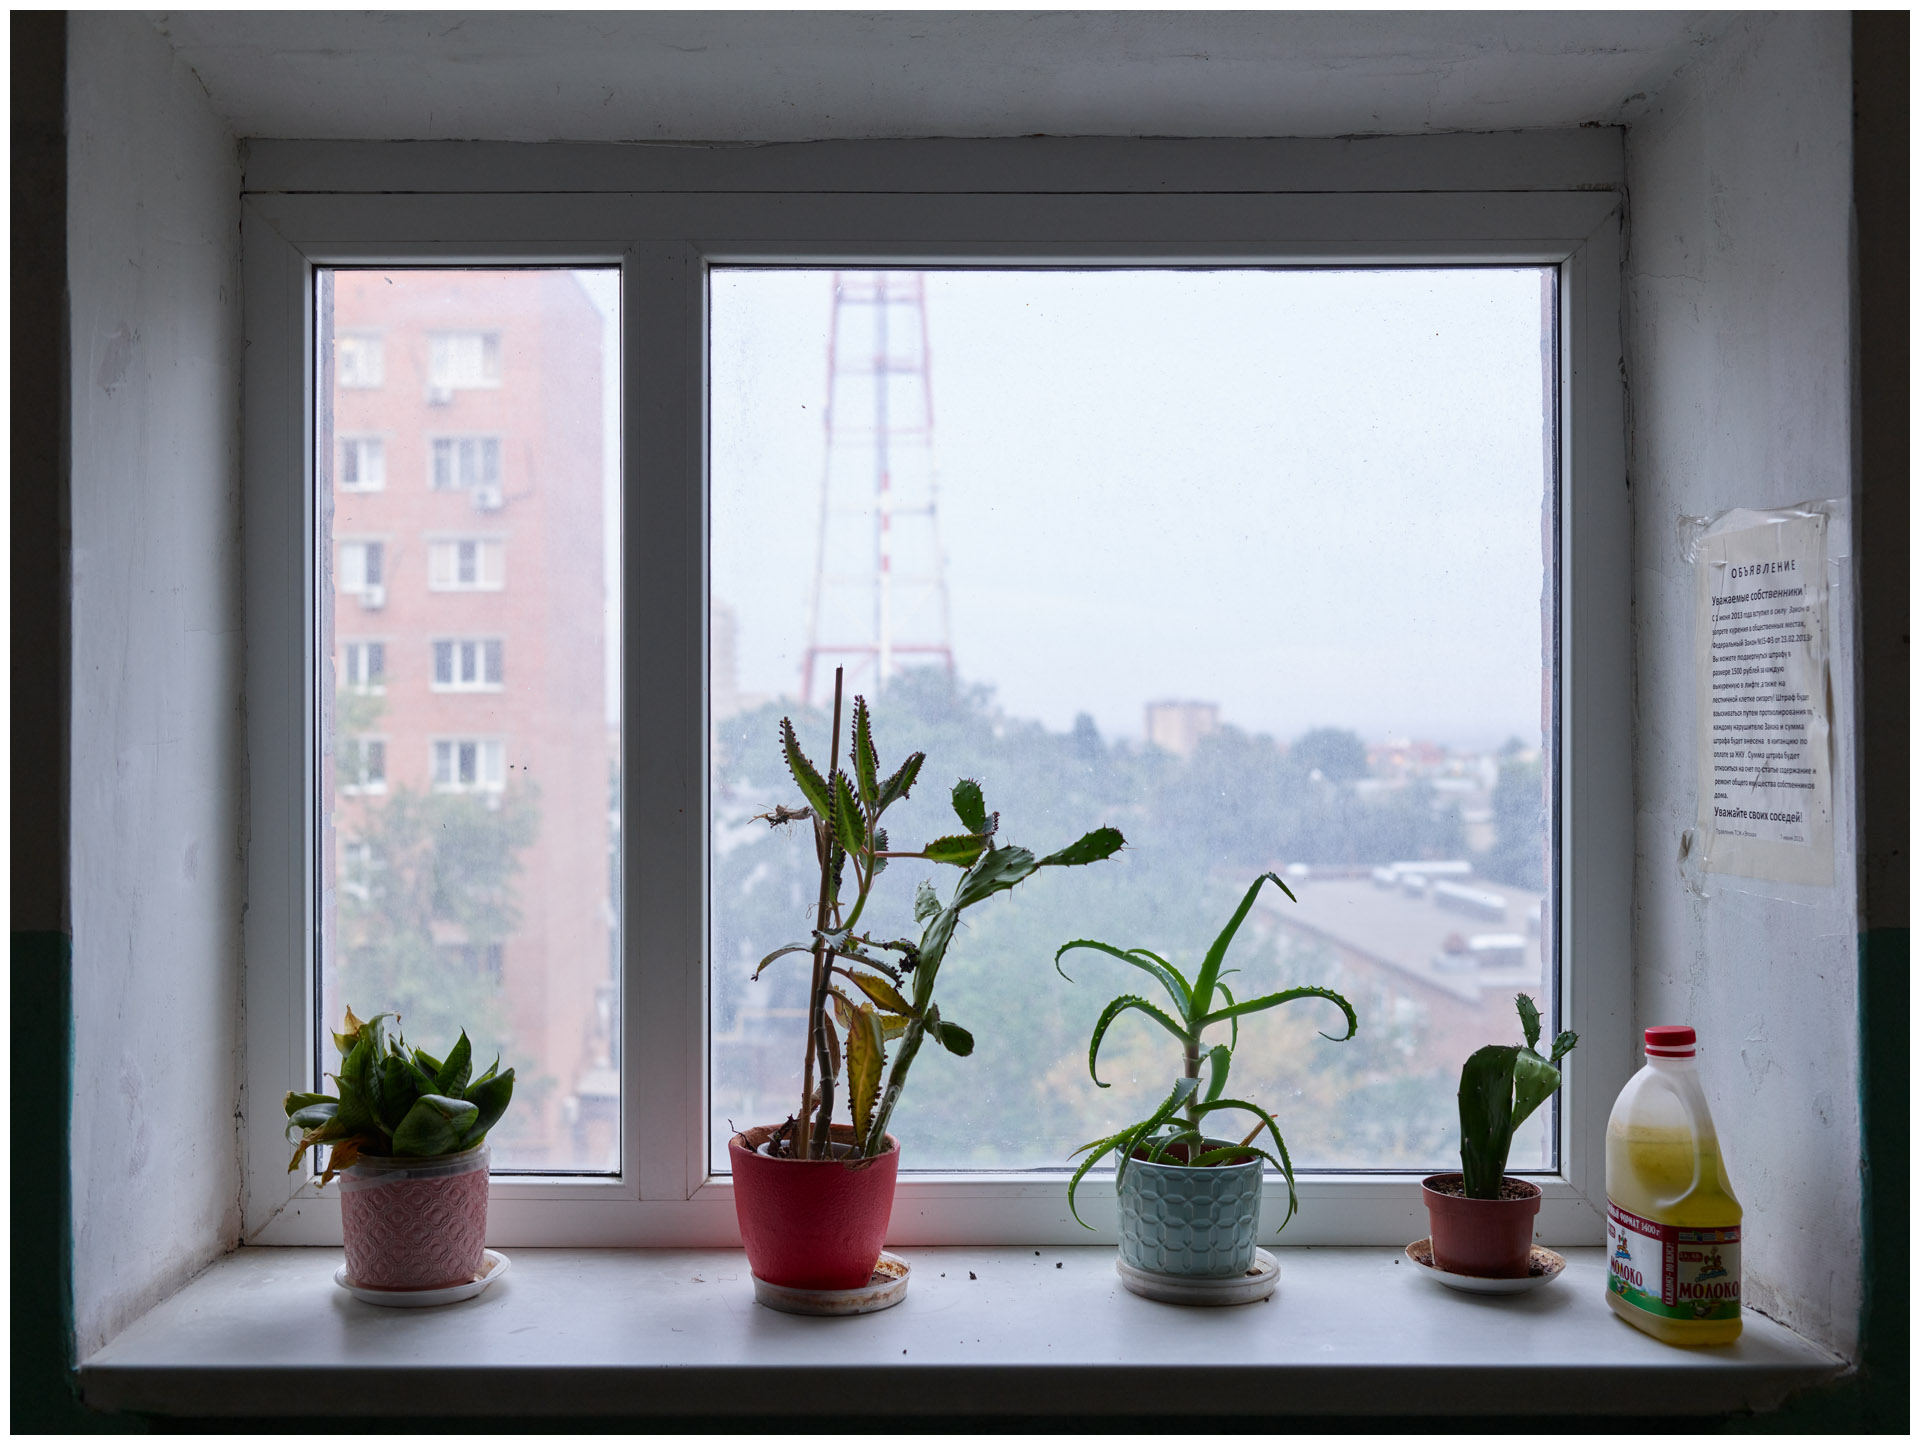 Четыре горшка с комнатными растениями стоят в ряд на подоконнике